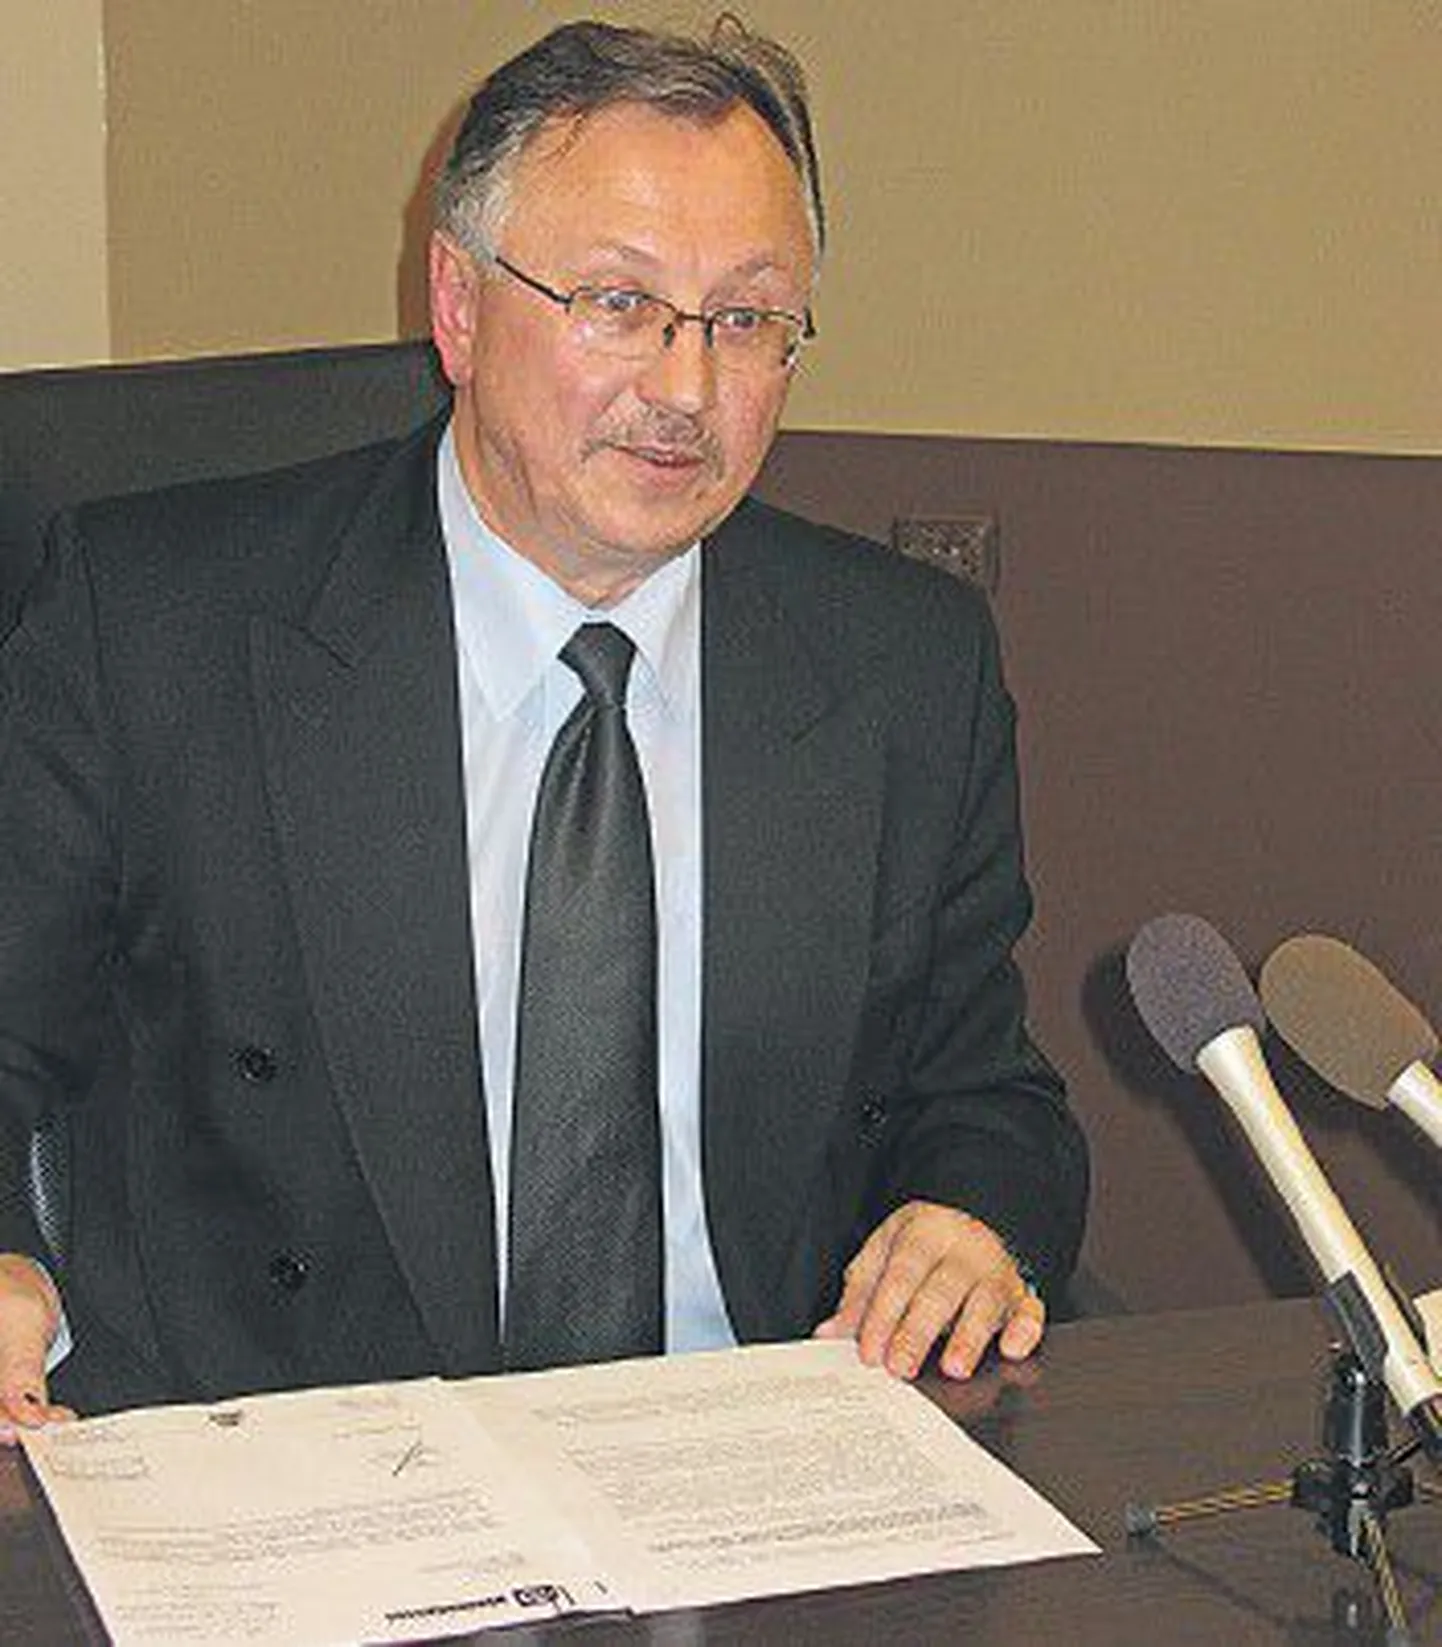 Бывший вице-мэр Нарвы Андрей Филиппов стал одним из фигурантов коррупционного скандала в приграничном городе.